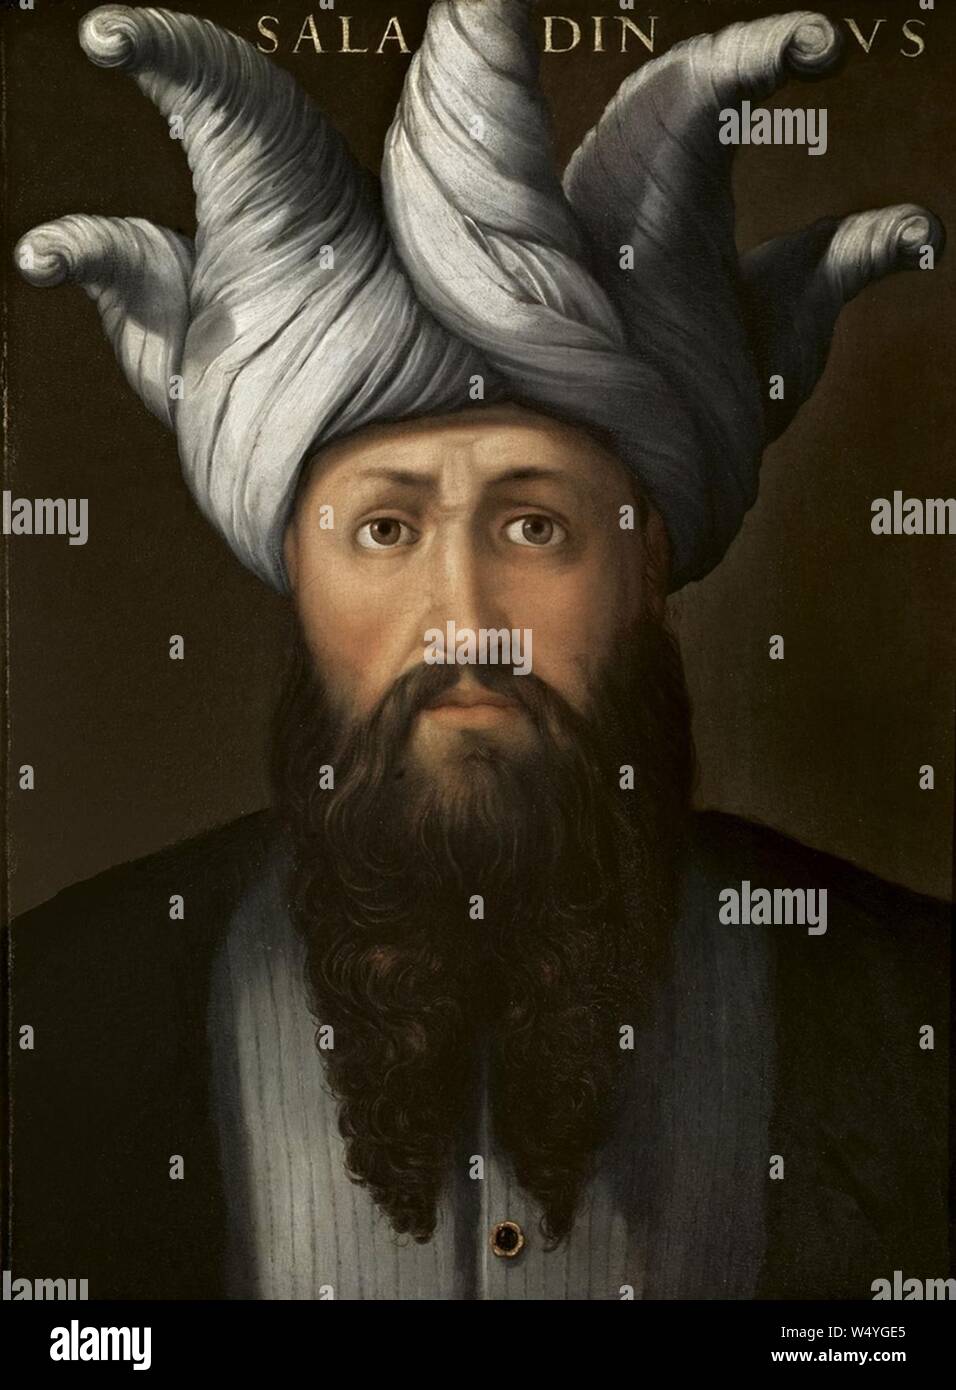 Cristofano dell'altissimo, saladino, Ante 1568-Serie Gioviana. Stockfoto